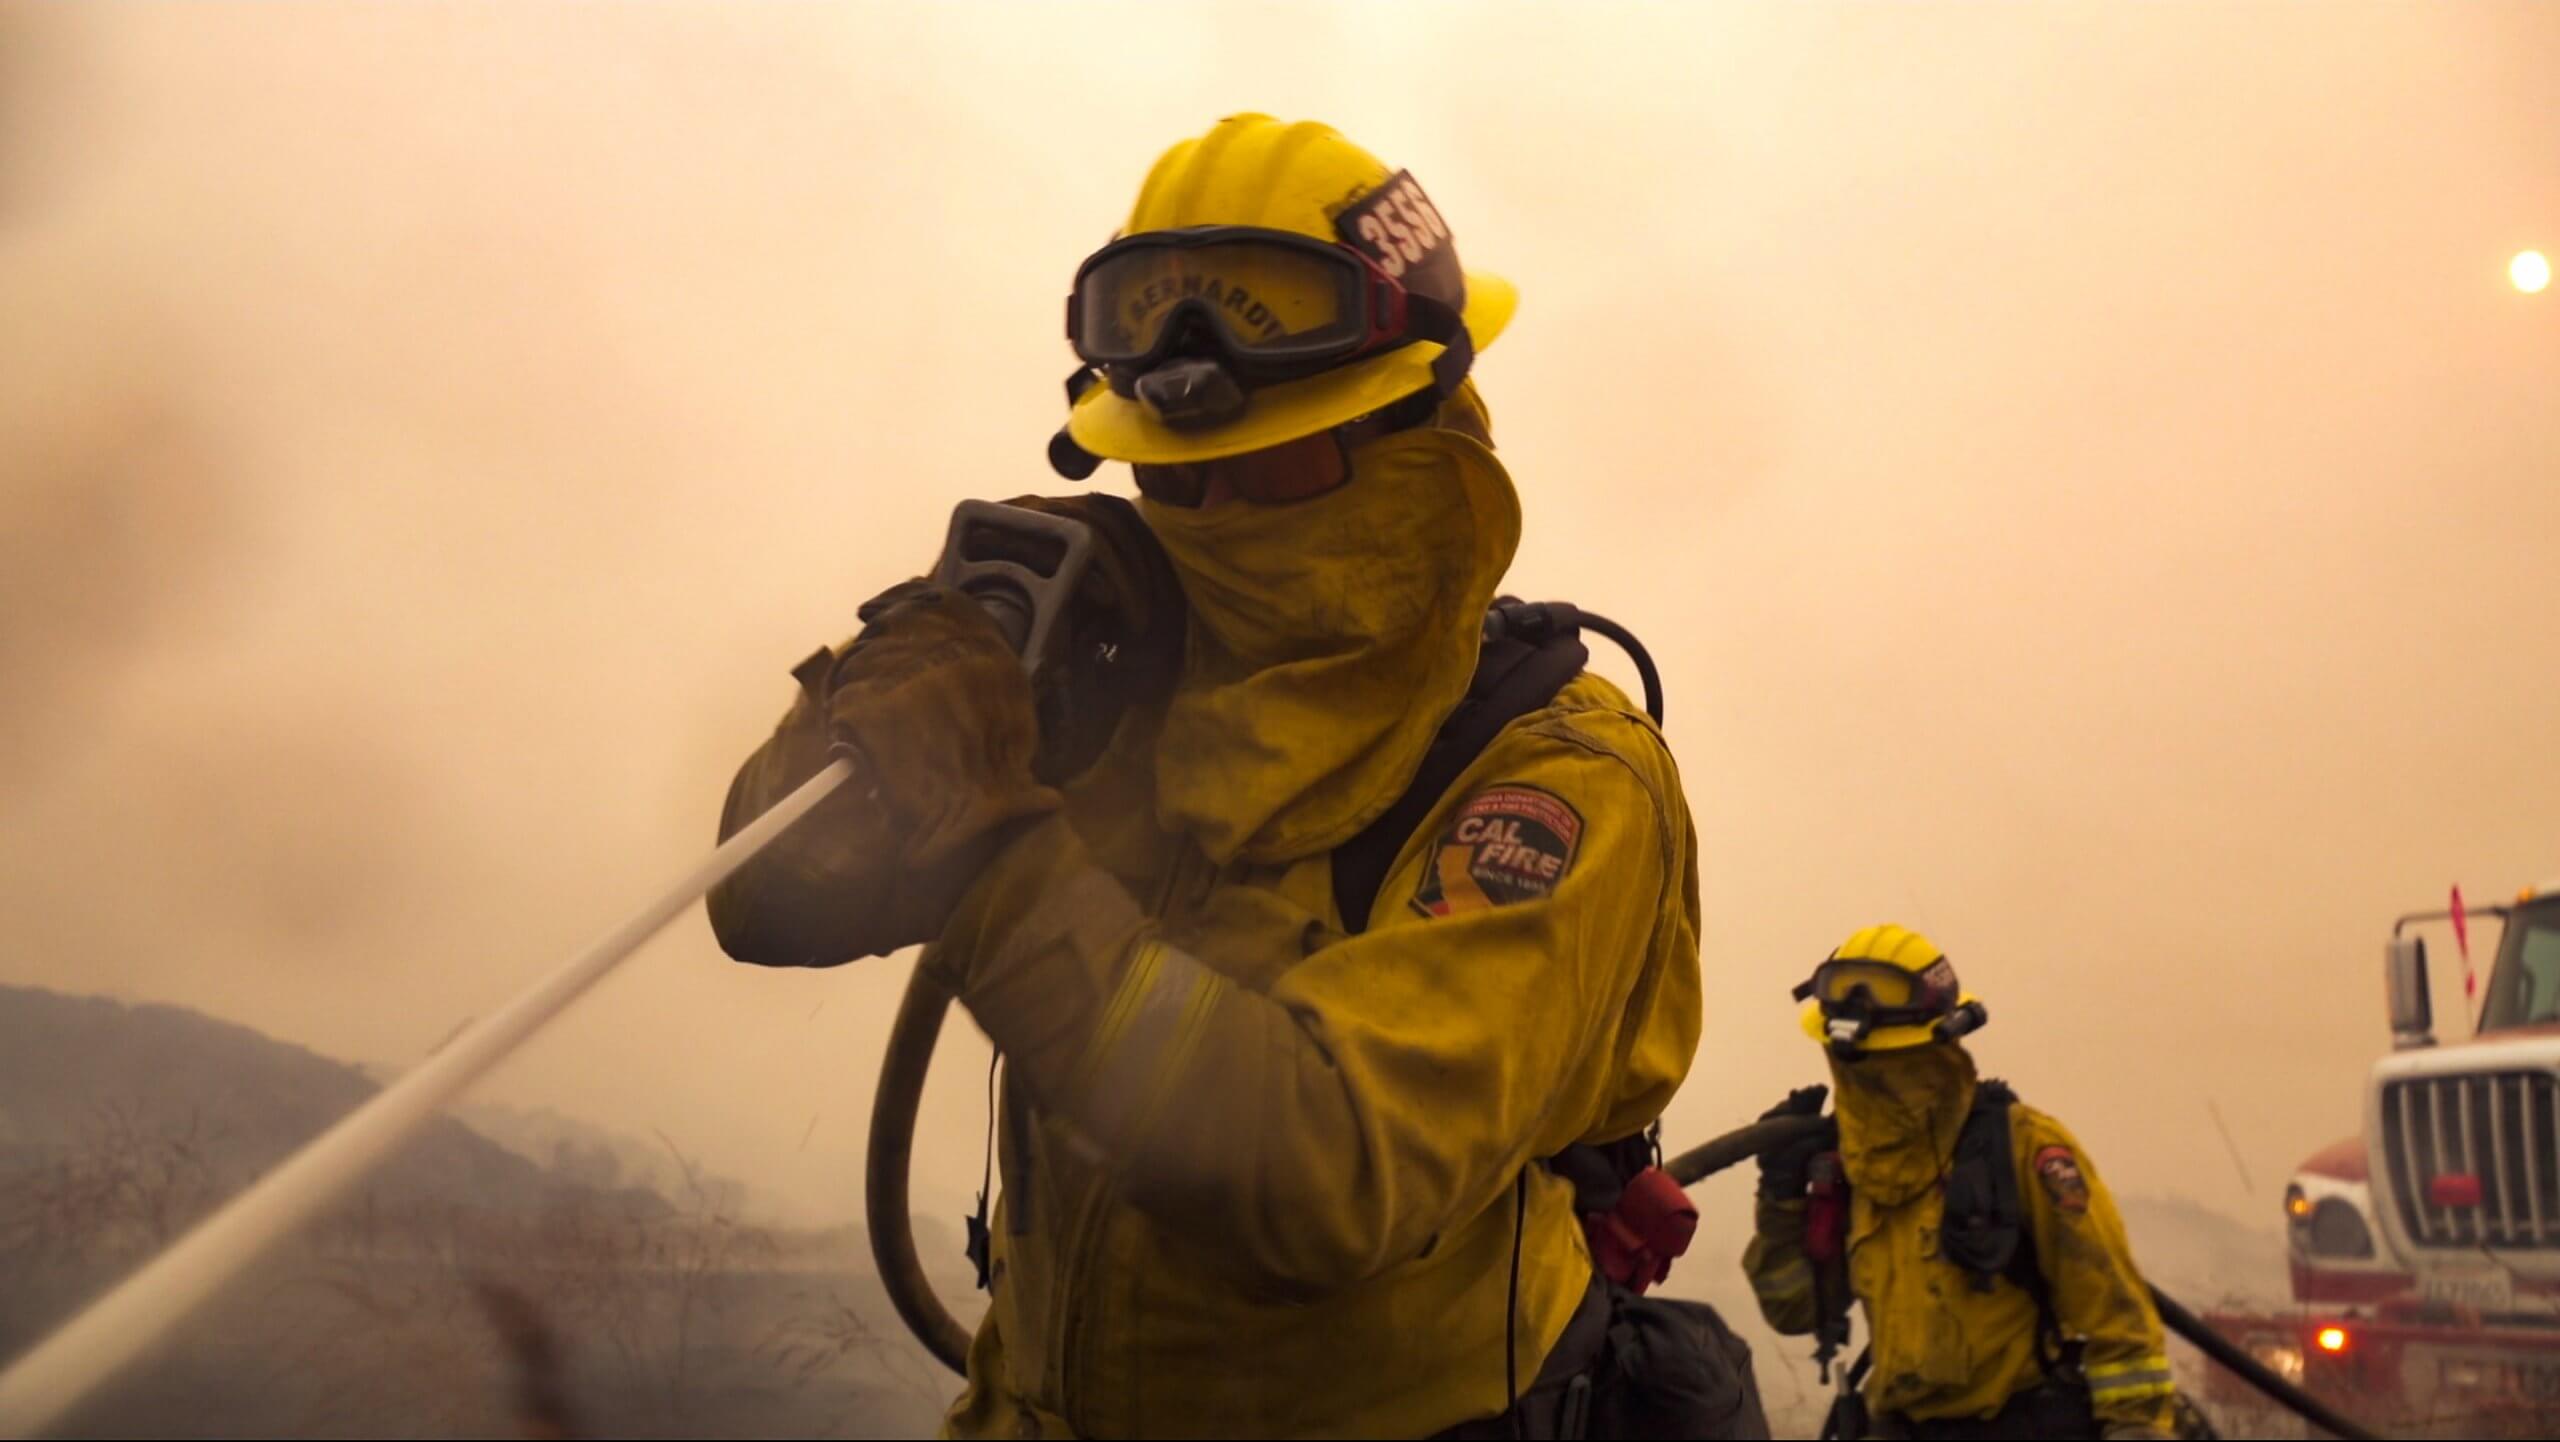 Kalifornští hasiči (Cal Fire)_Discovery Channel